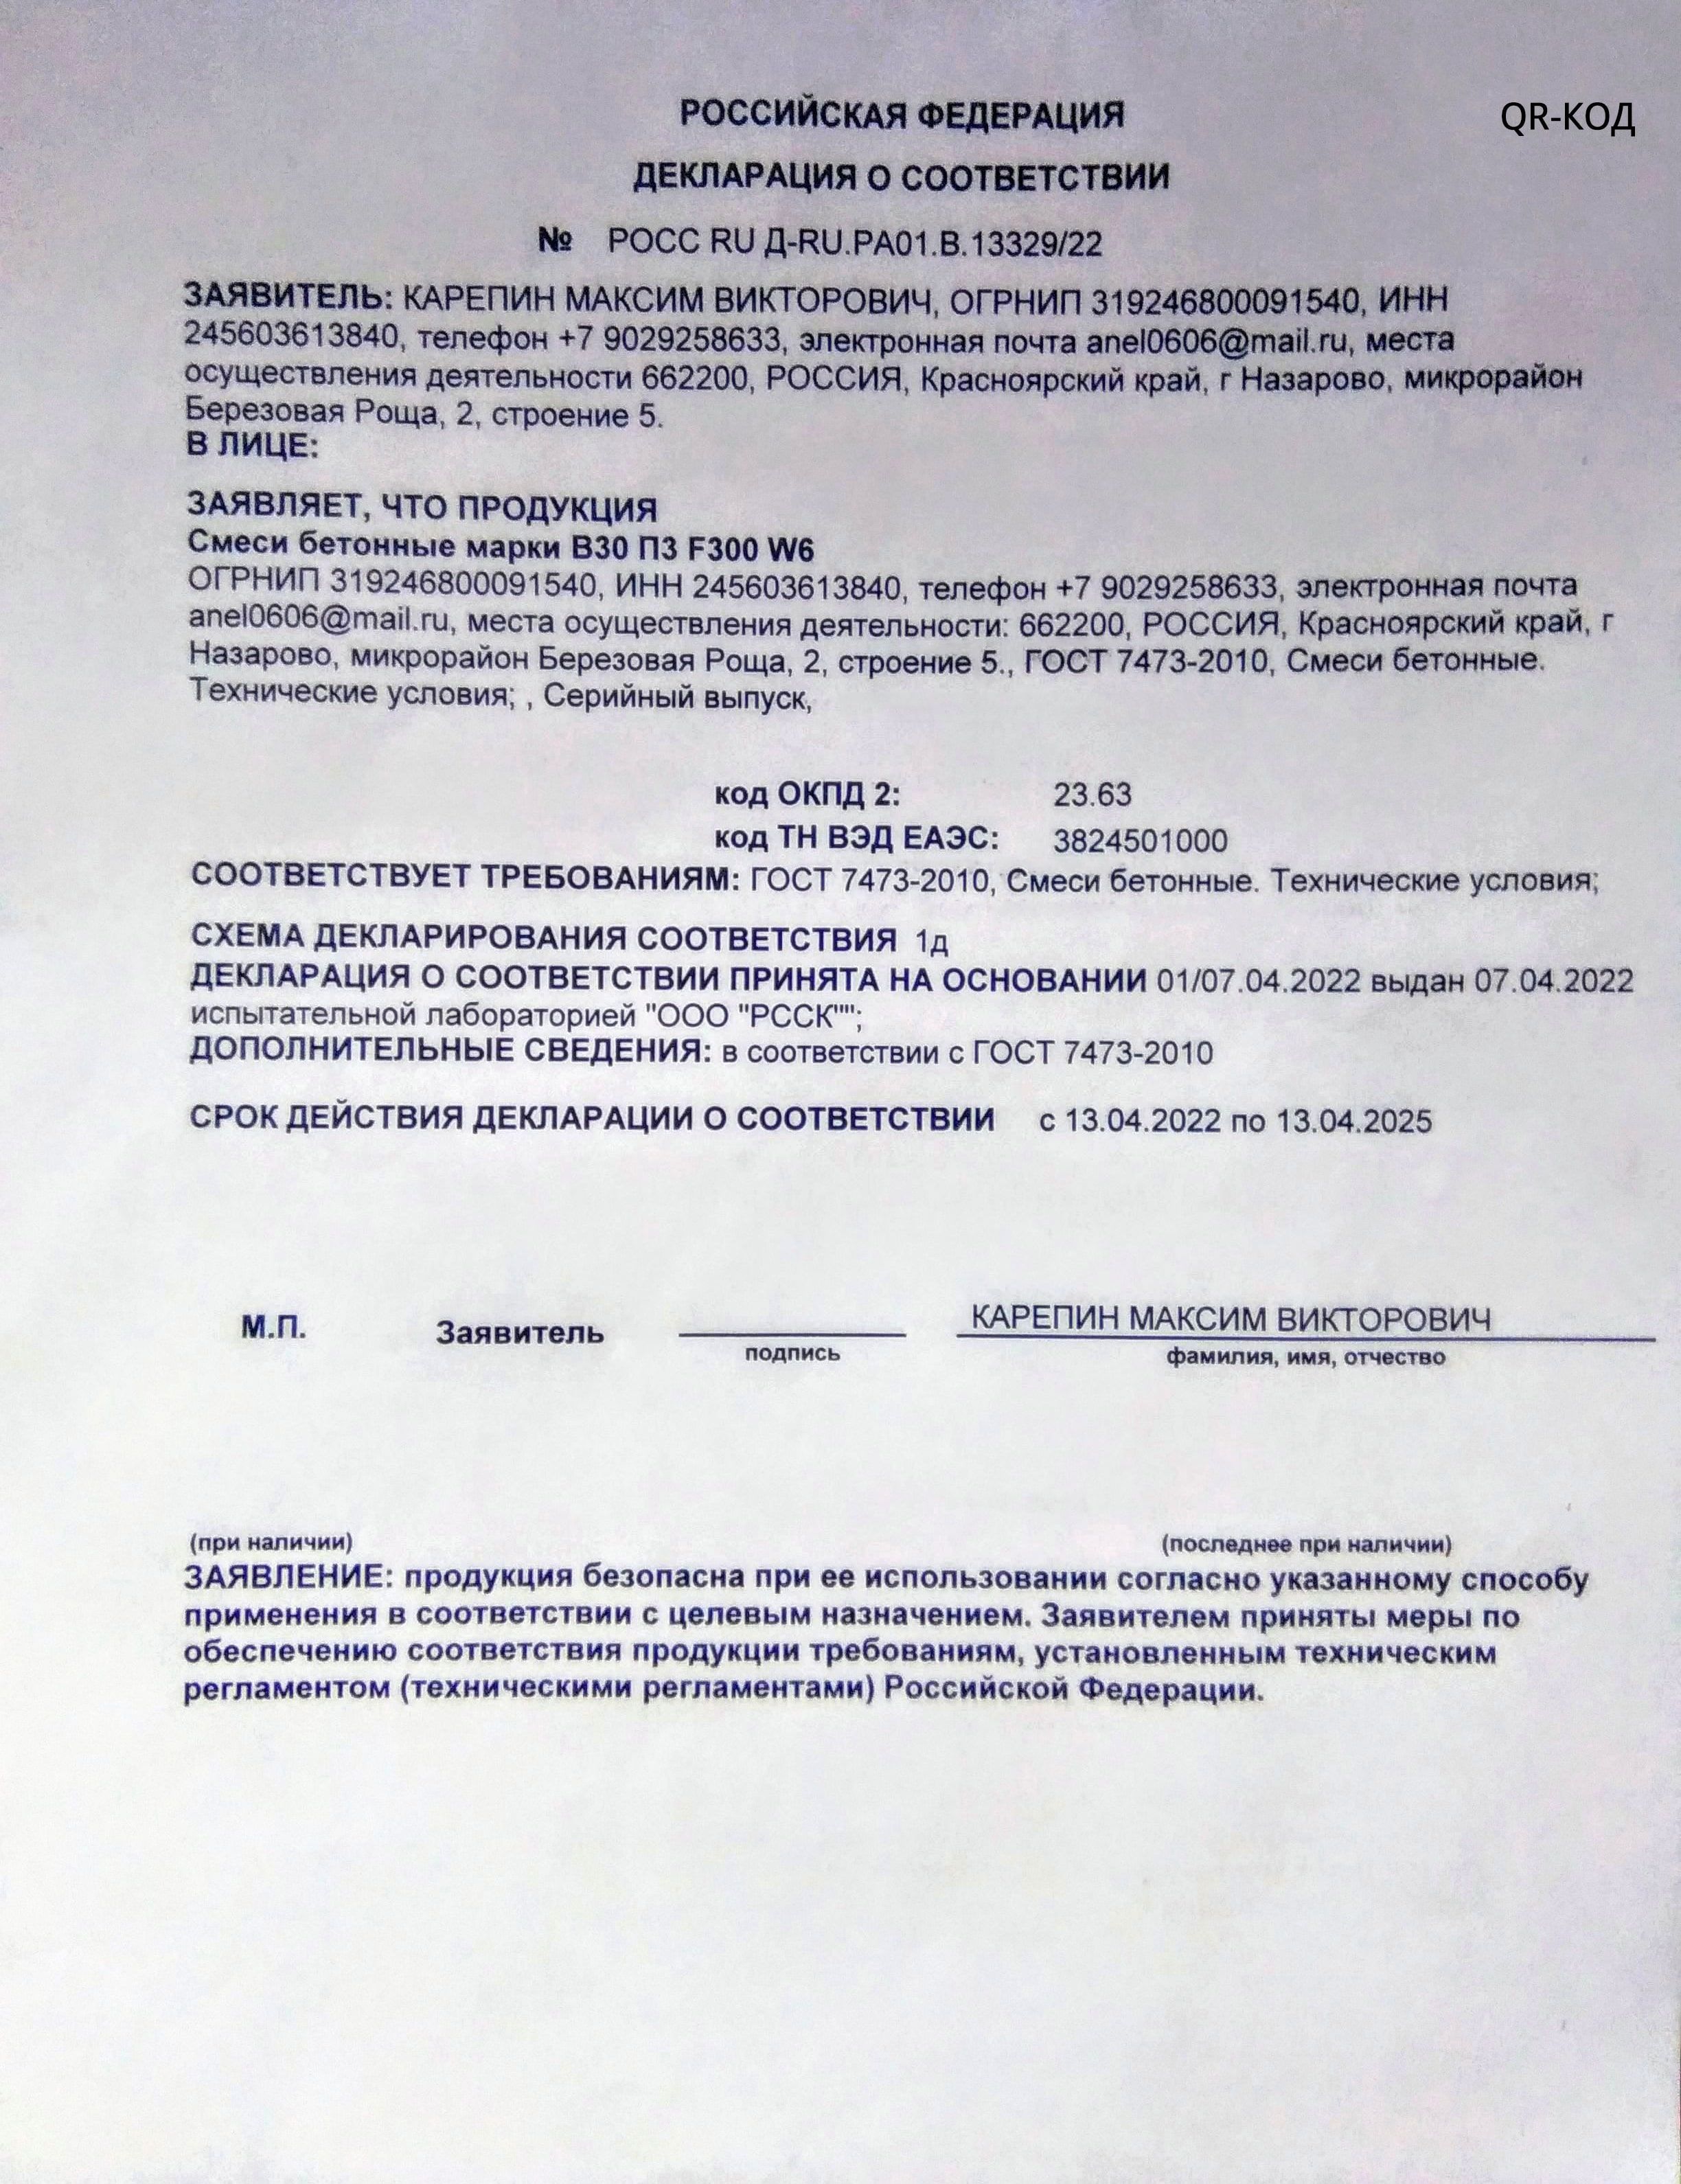 Декларация о соответствии бетонных смесей марки В30 ПЗ F300 W6 требованиям ГОСТ 7473-2010 | nazarovo-beton.ru - производитель бетона, раствора в Назарово